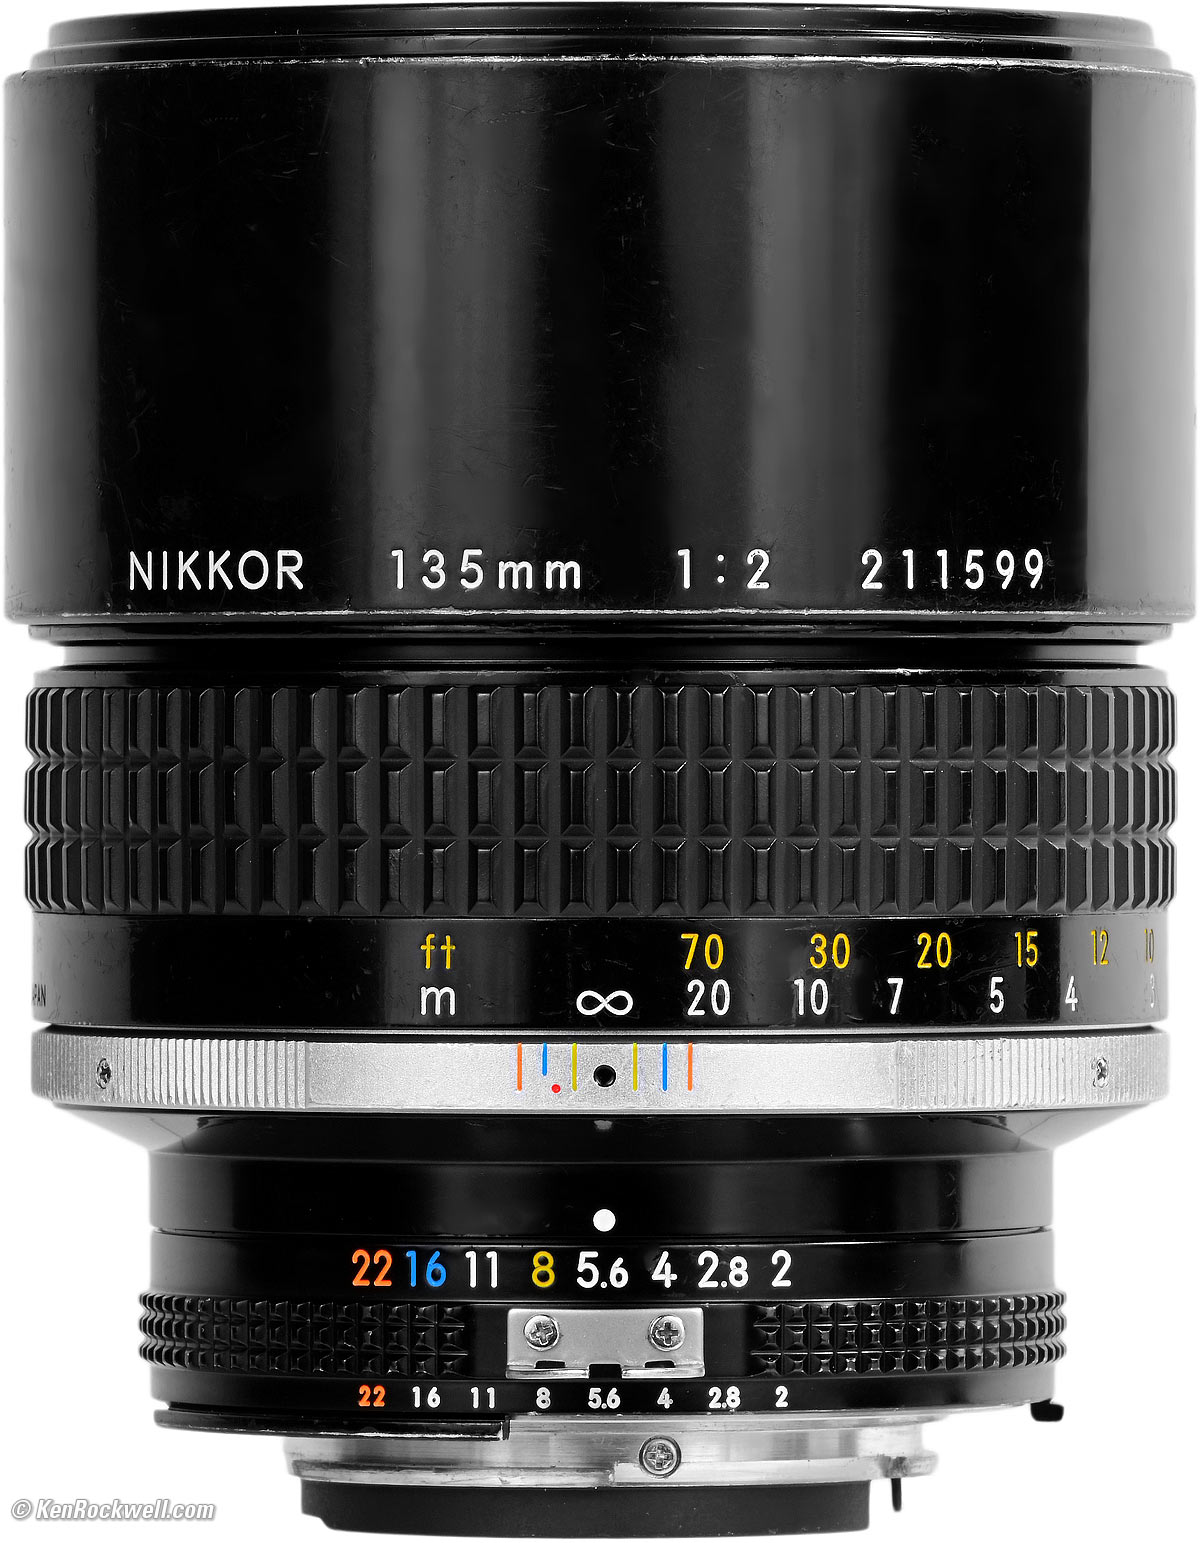 Nikon 135mm f/2 Review